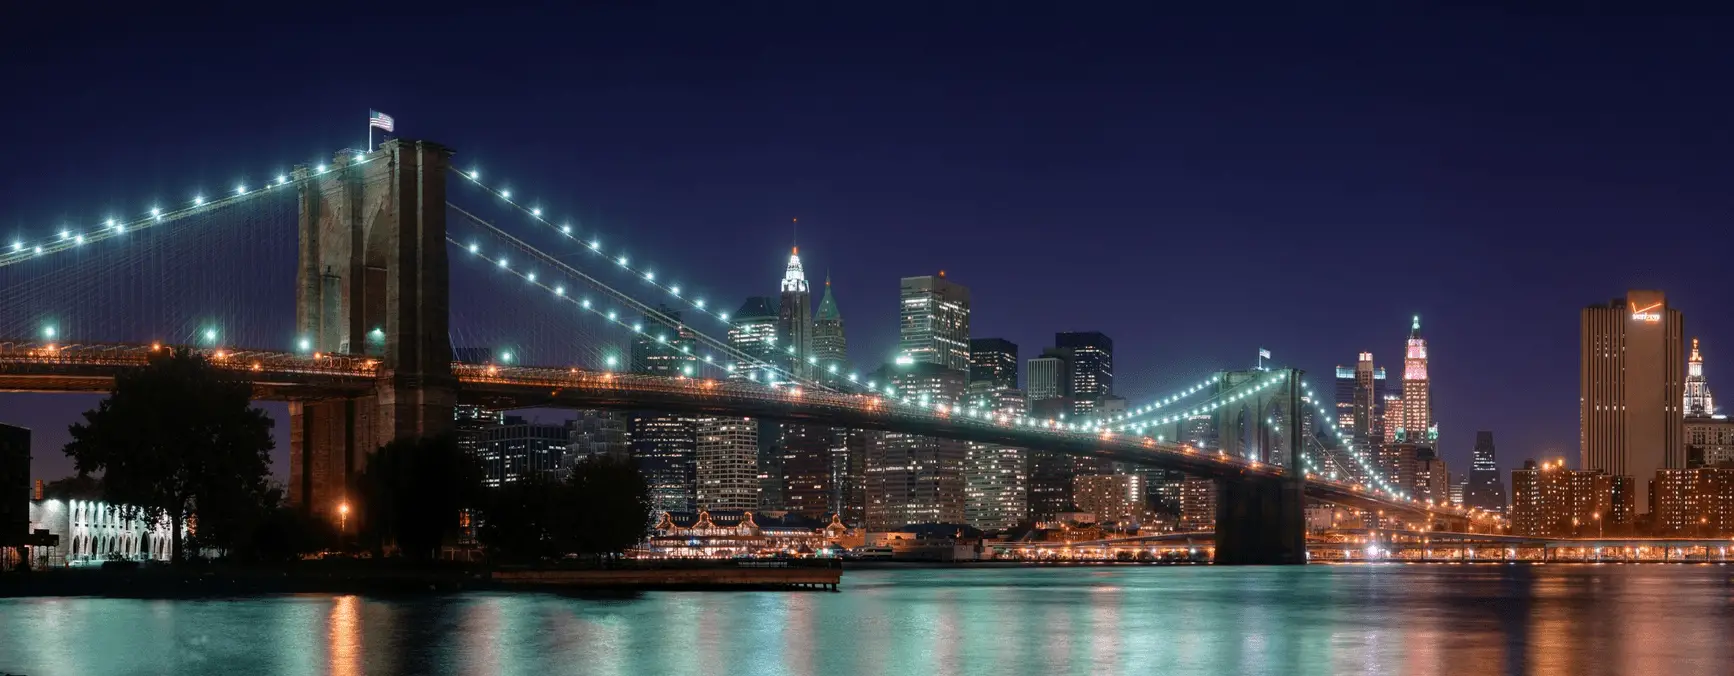 Imagem noturna de uma ponte iluminada contra um fundo da cidade do site de papel de parede panorâmico HDWallpapers